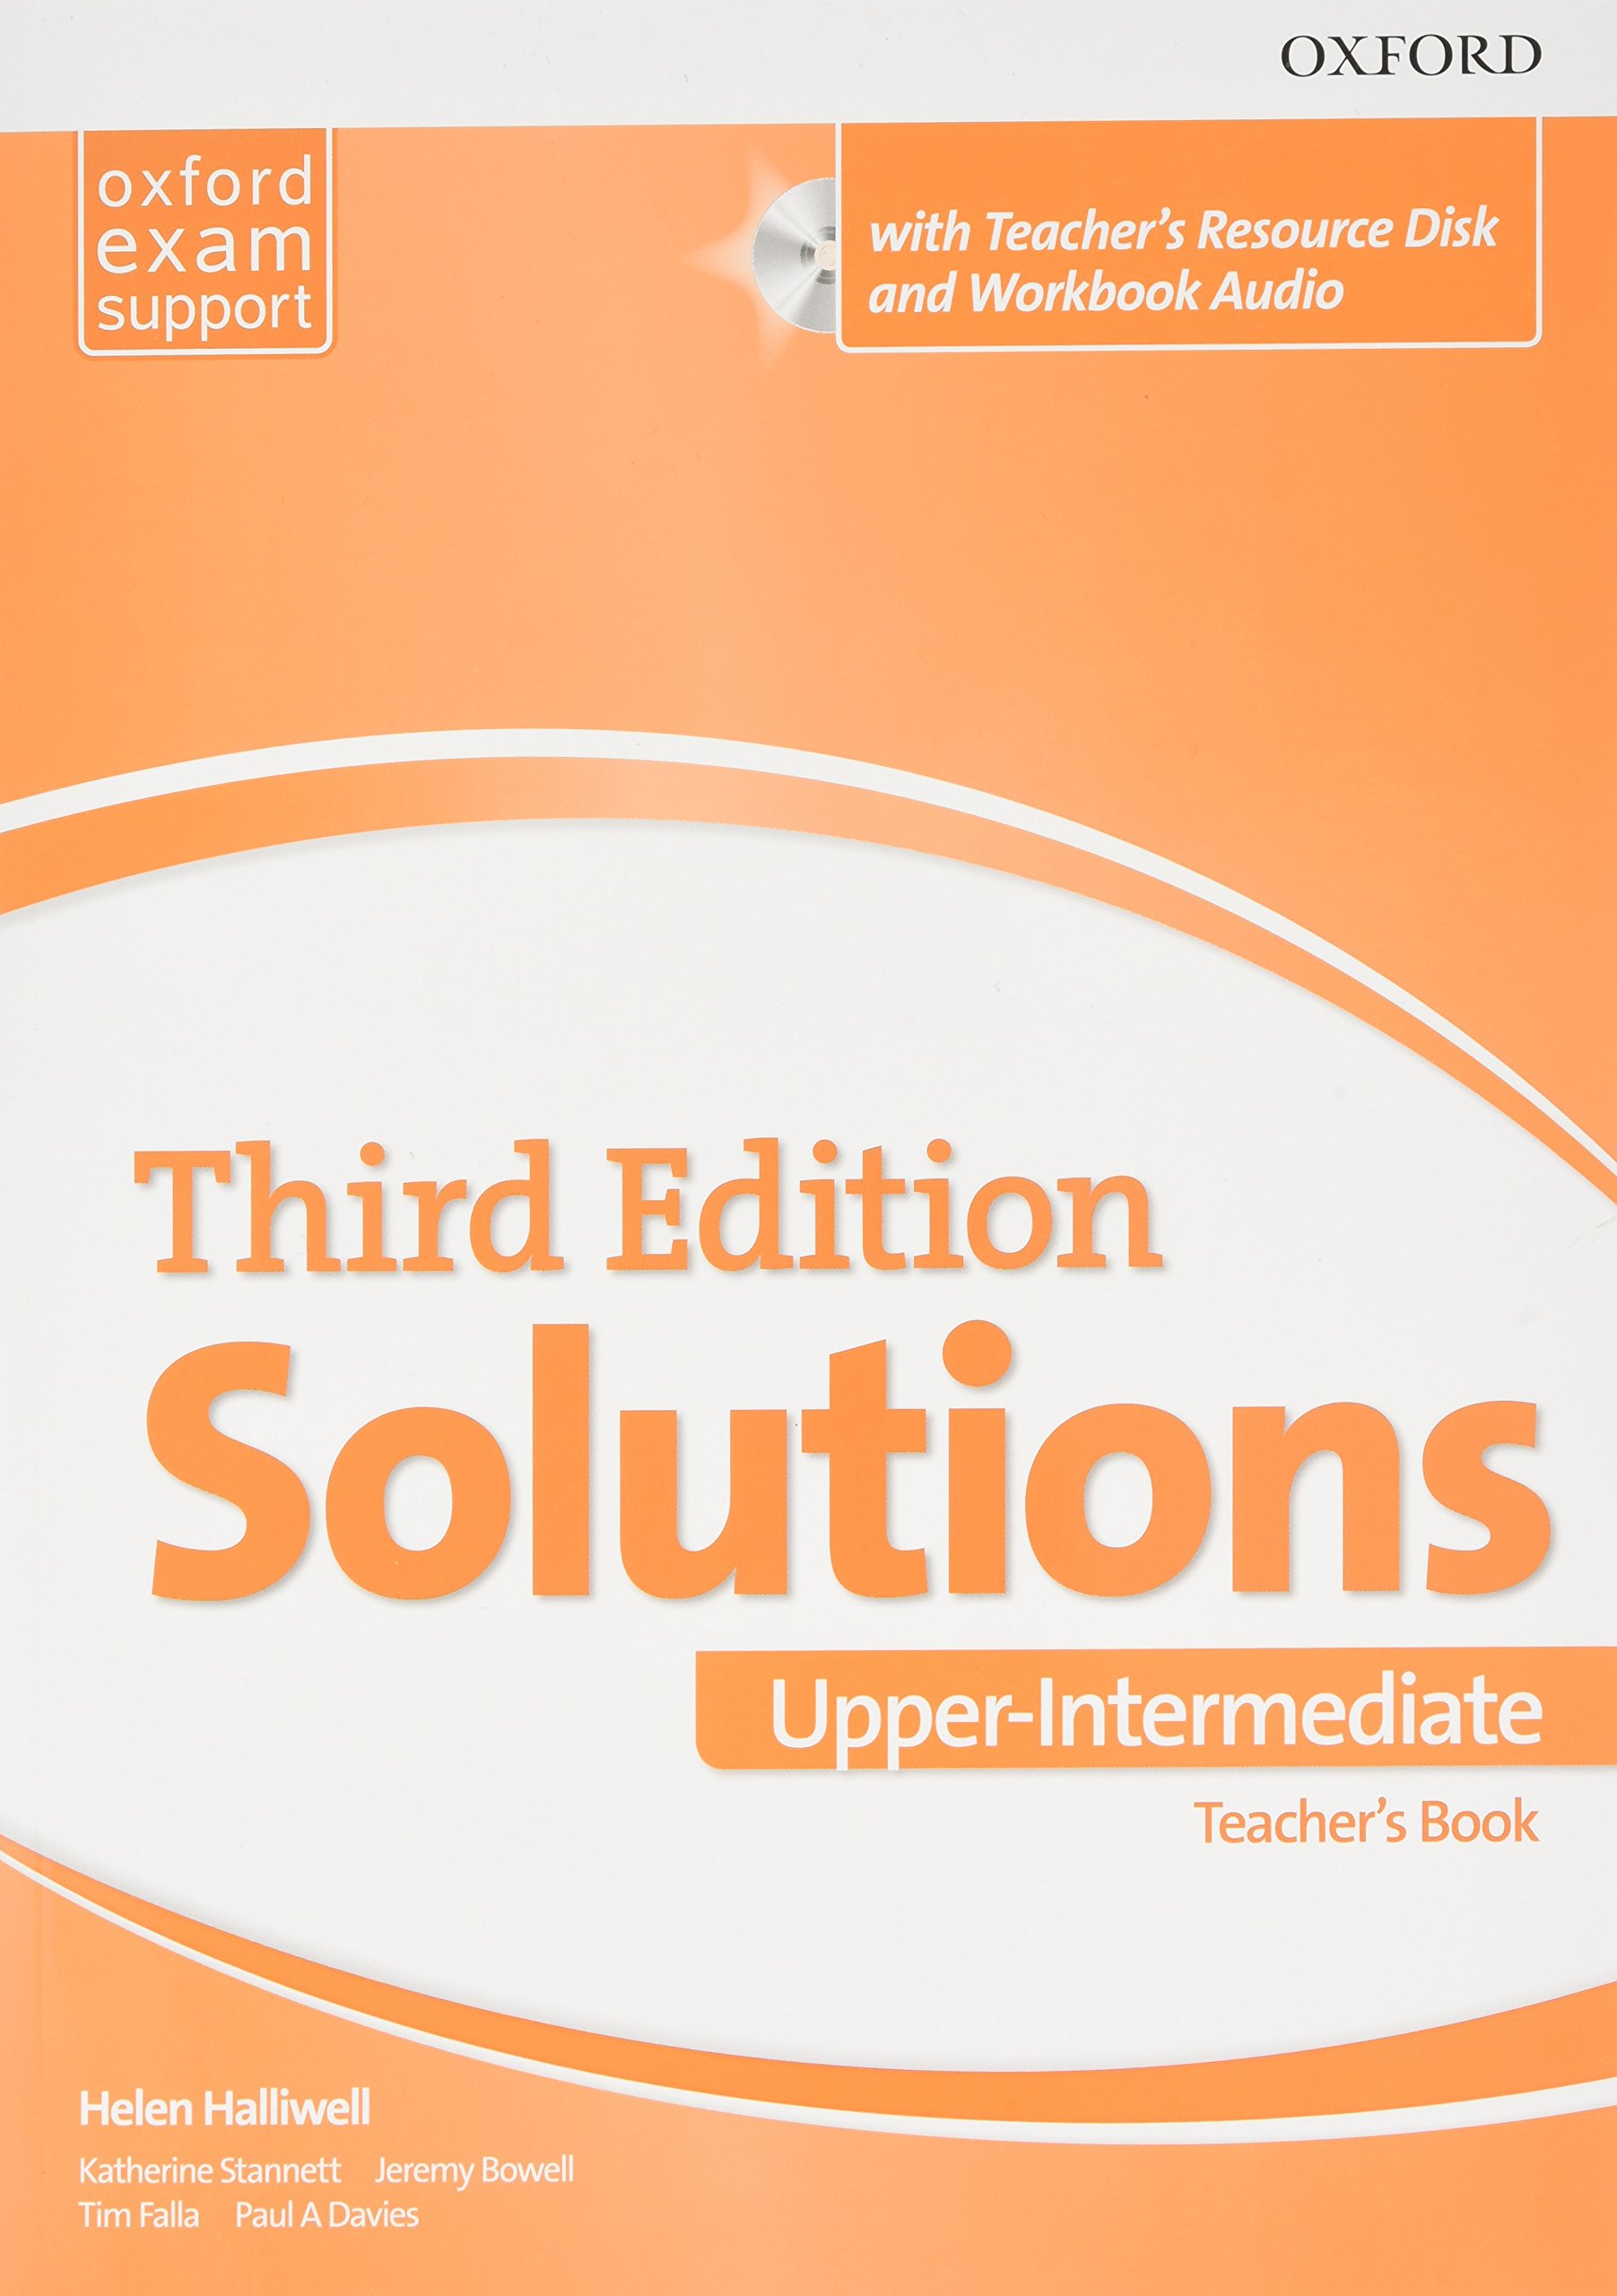 Maturita Solutions 3rd Edition Upper-intermediate Teacher's Pack